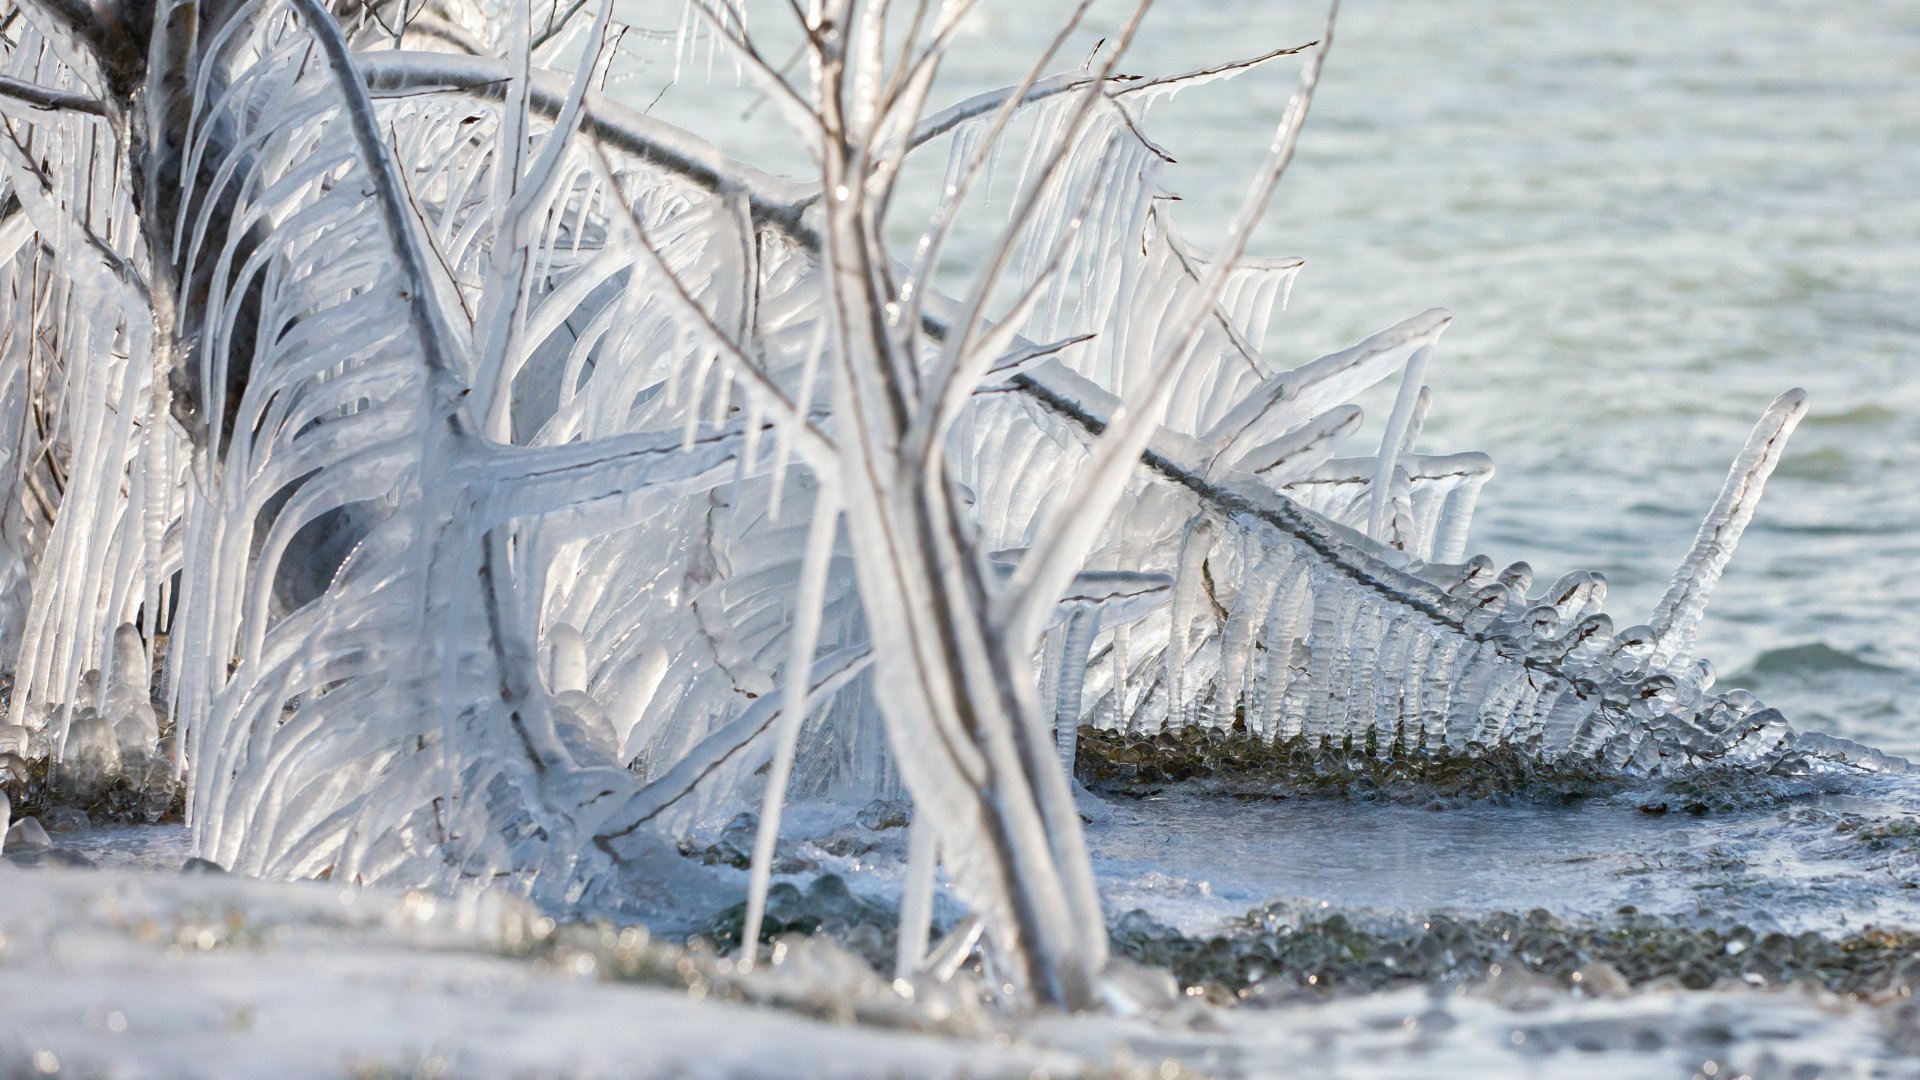 Jeges formák a Balaton partján